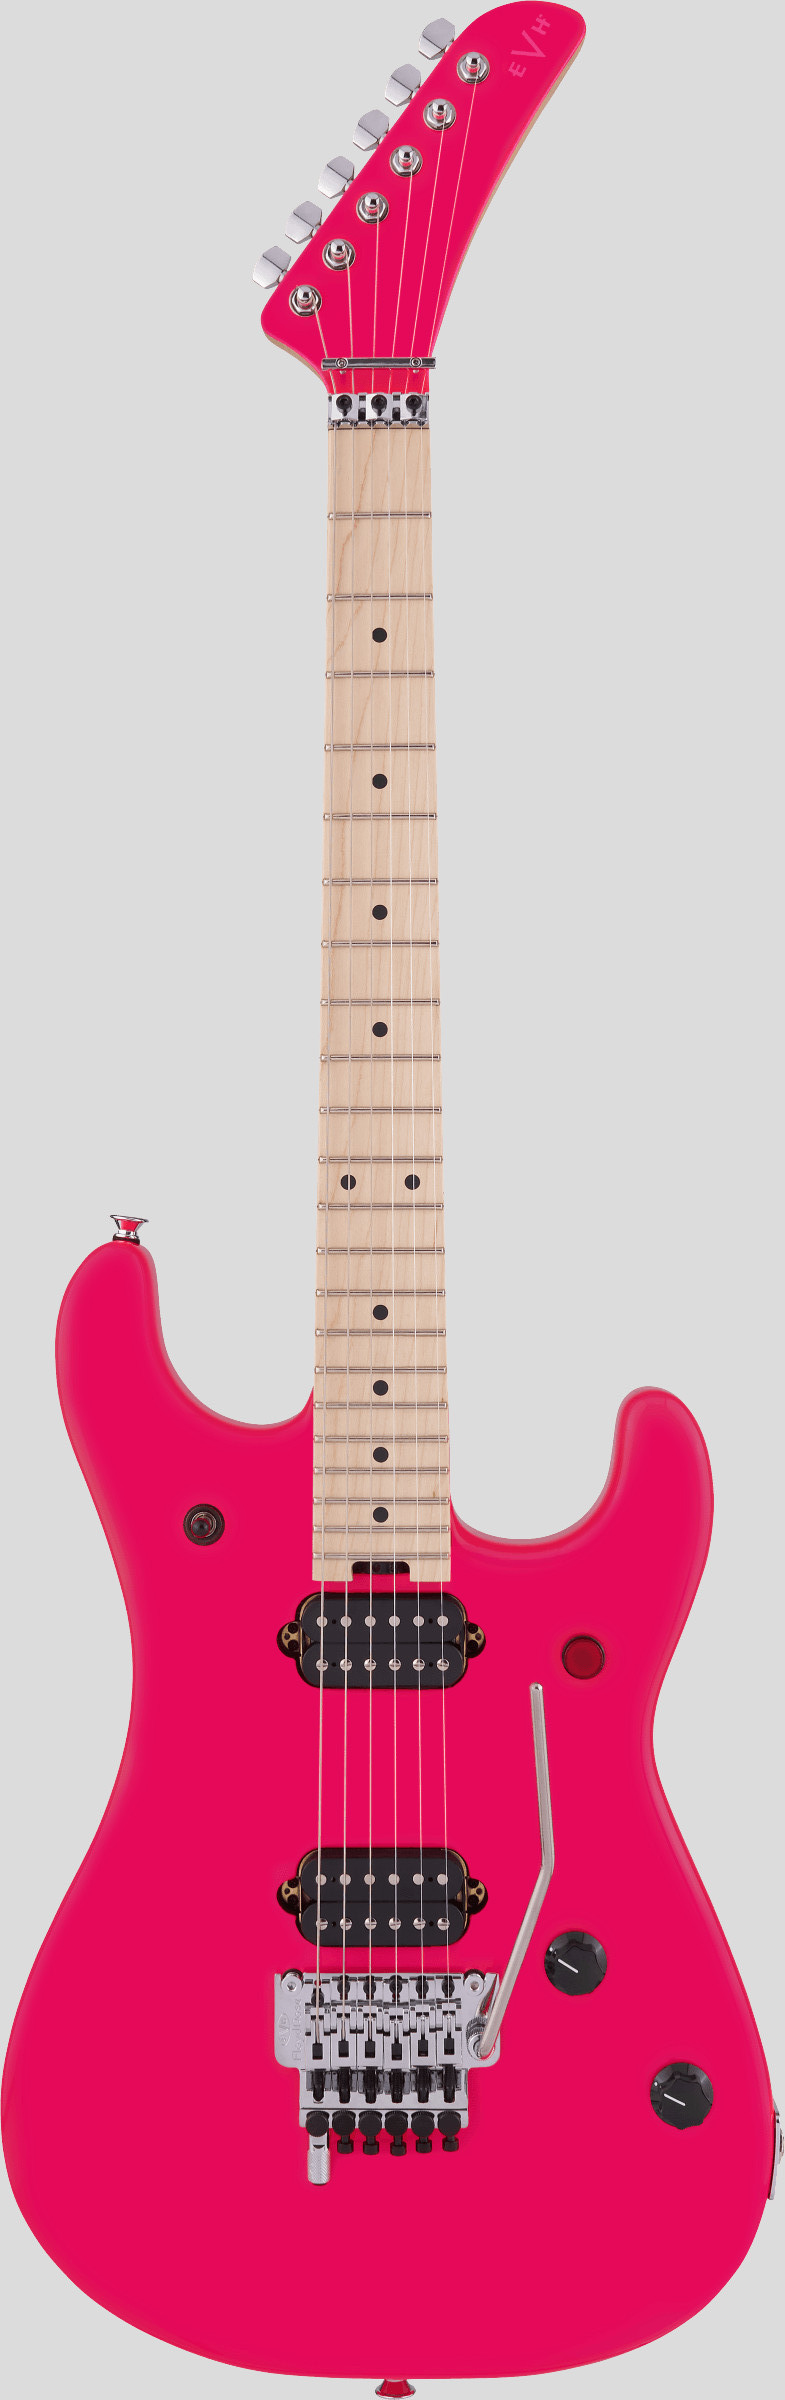 EVH 5150 Standard Maple Fingerboard Neon Pink 1